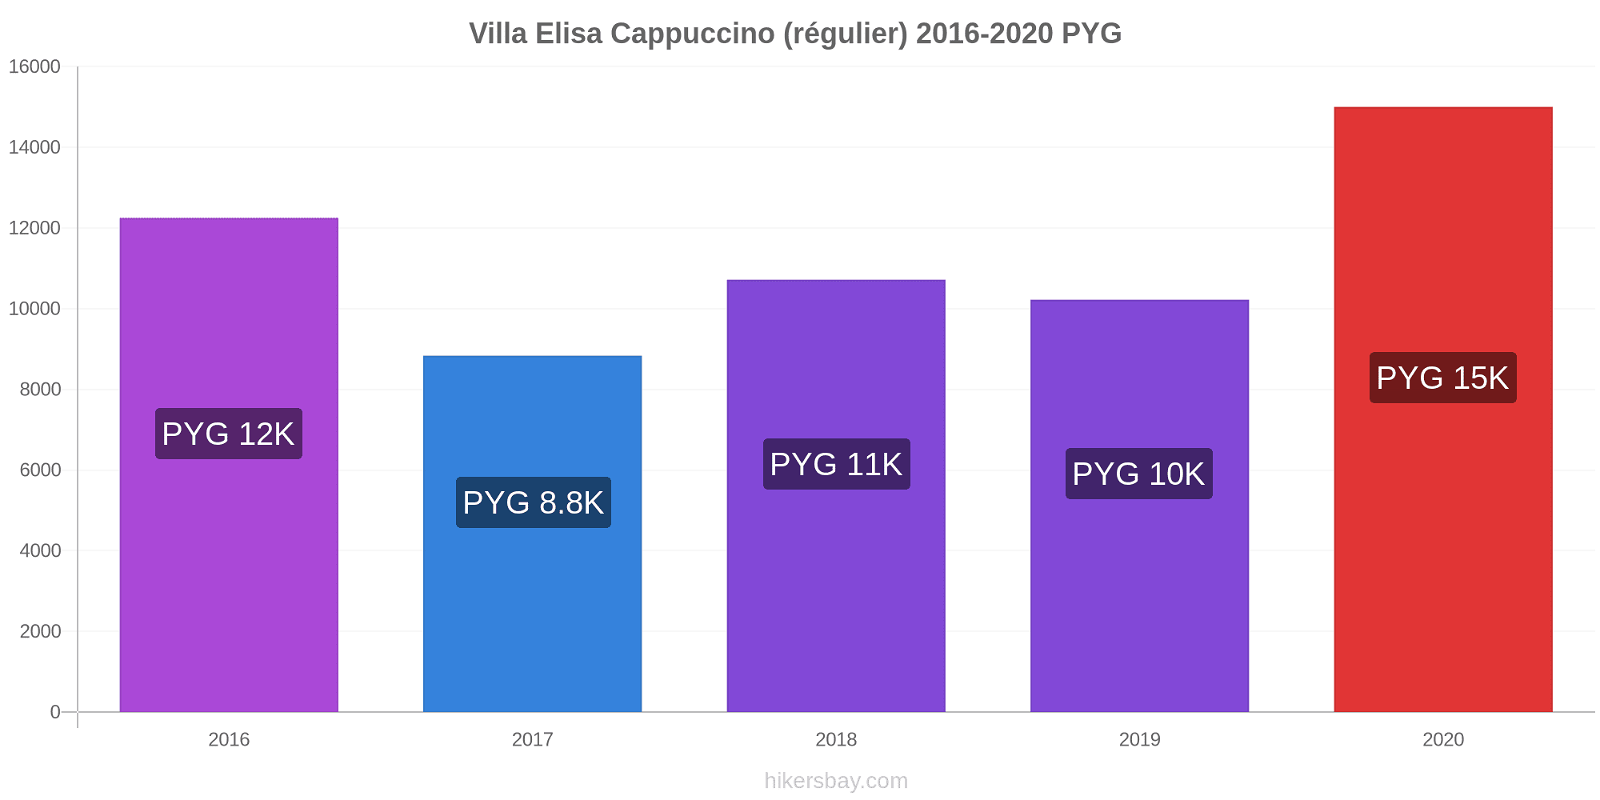 Villa Elisa changements de prix Cappuccino (régulier) hikersbay.com